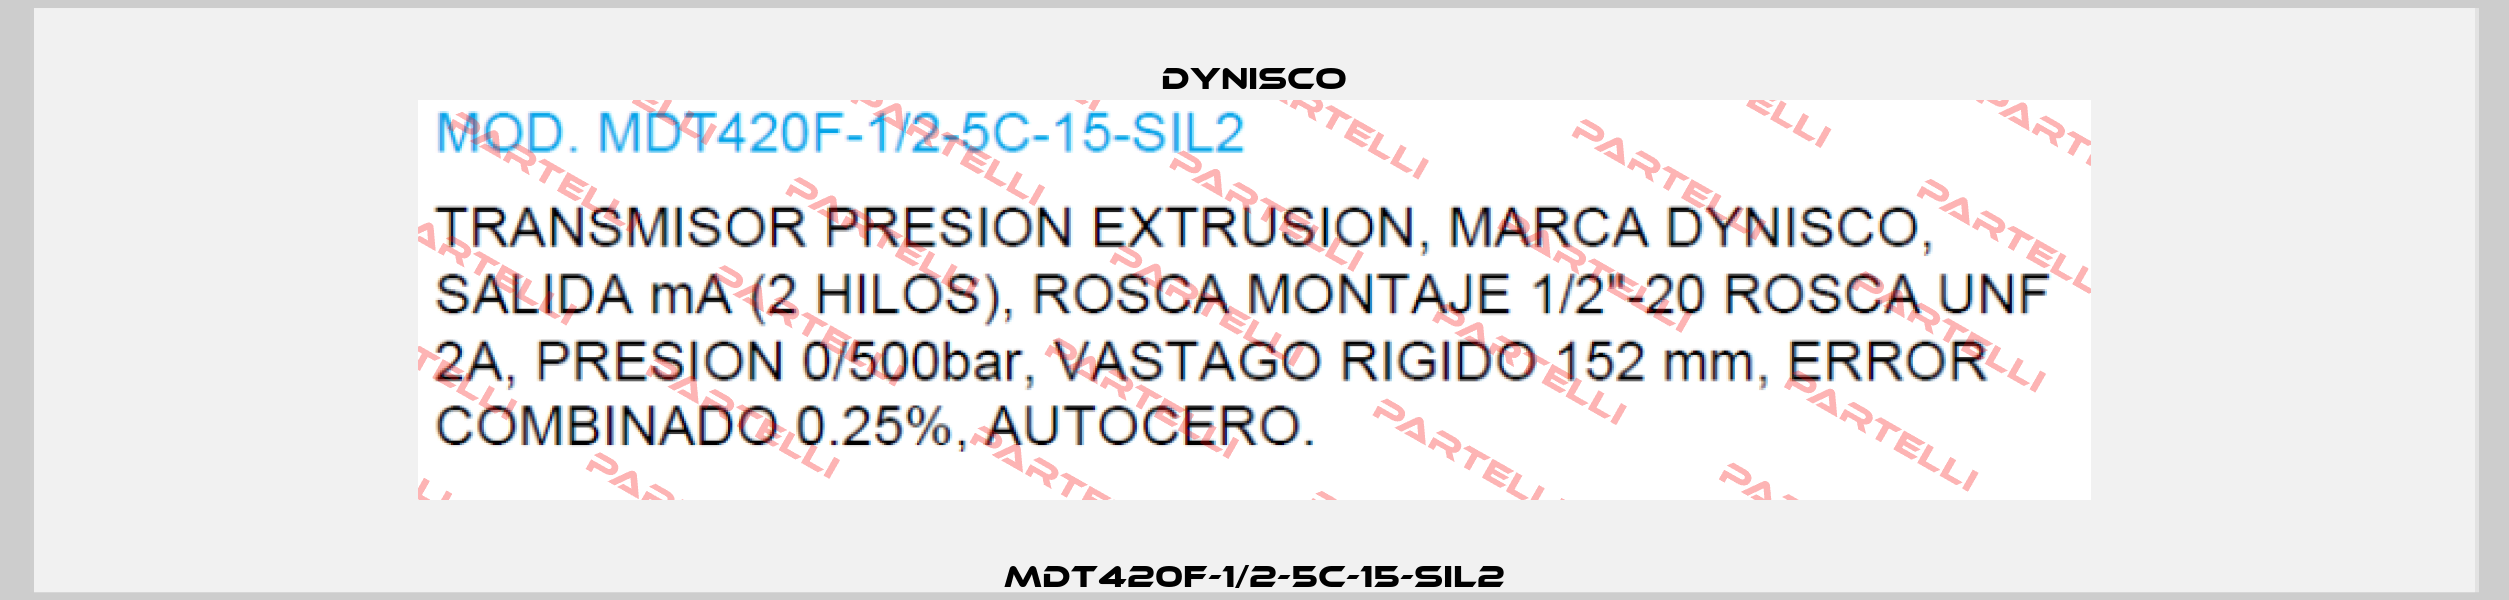 MDT420F-1/2-5C-15-SIL2 Dynisco